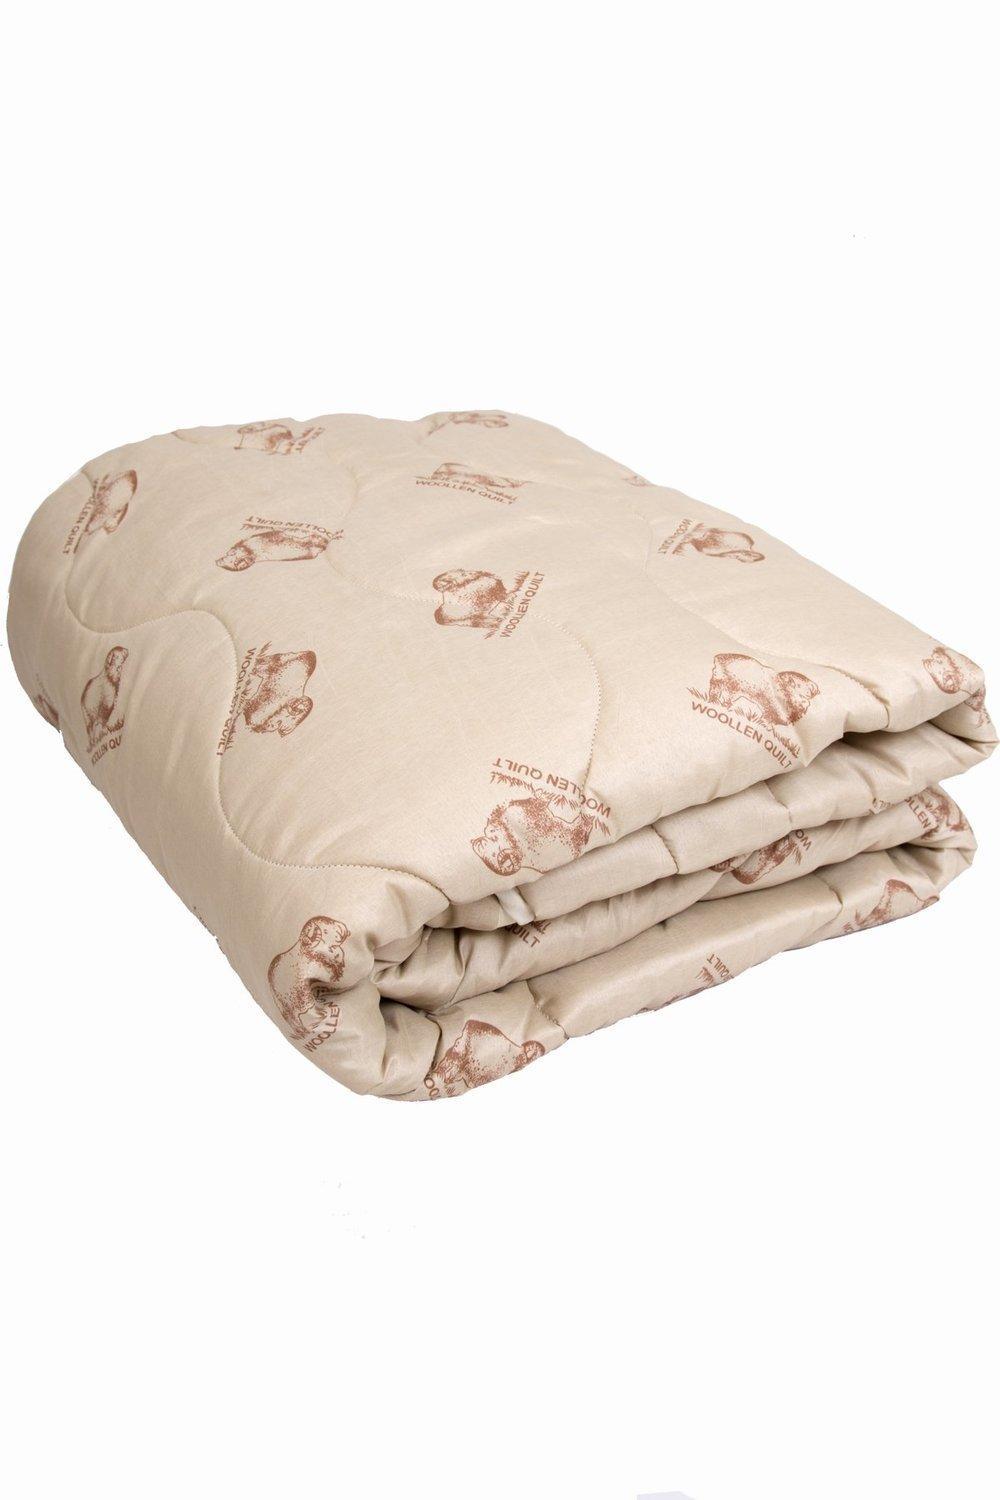 Купить Одеяло В Интернет Магазине Недорого